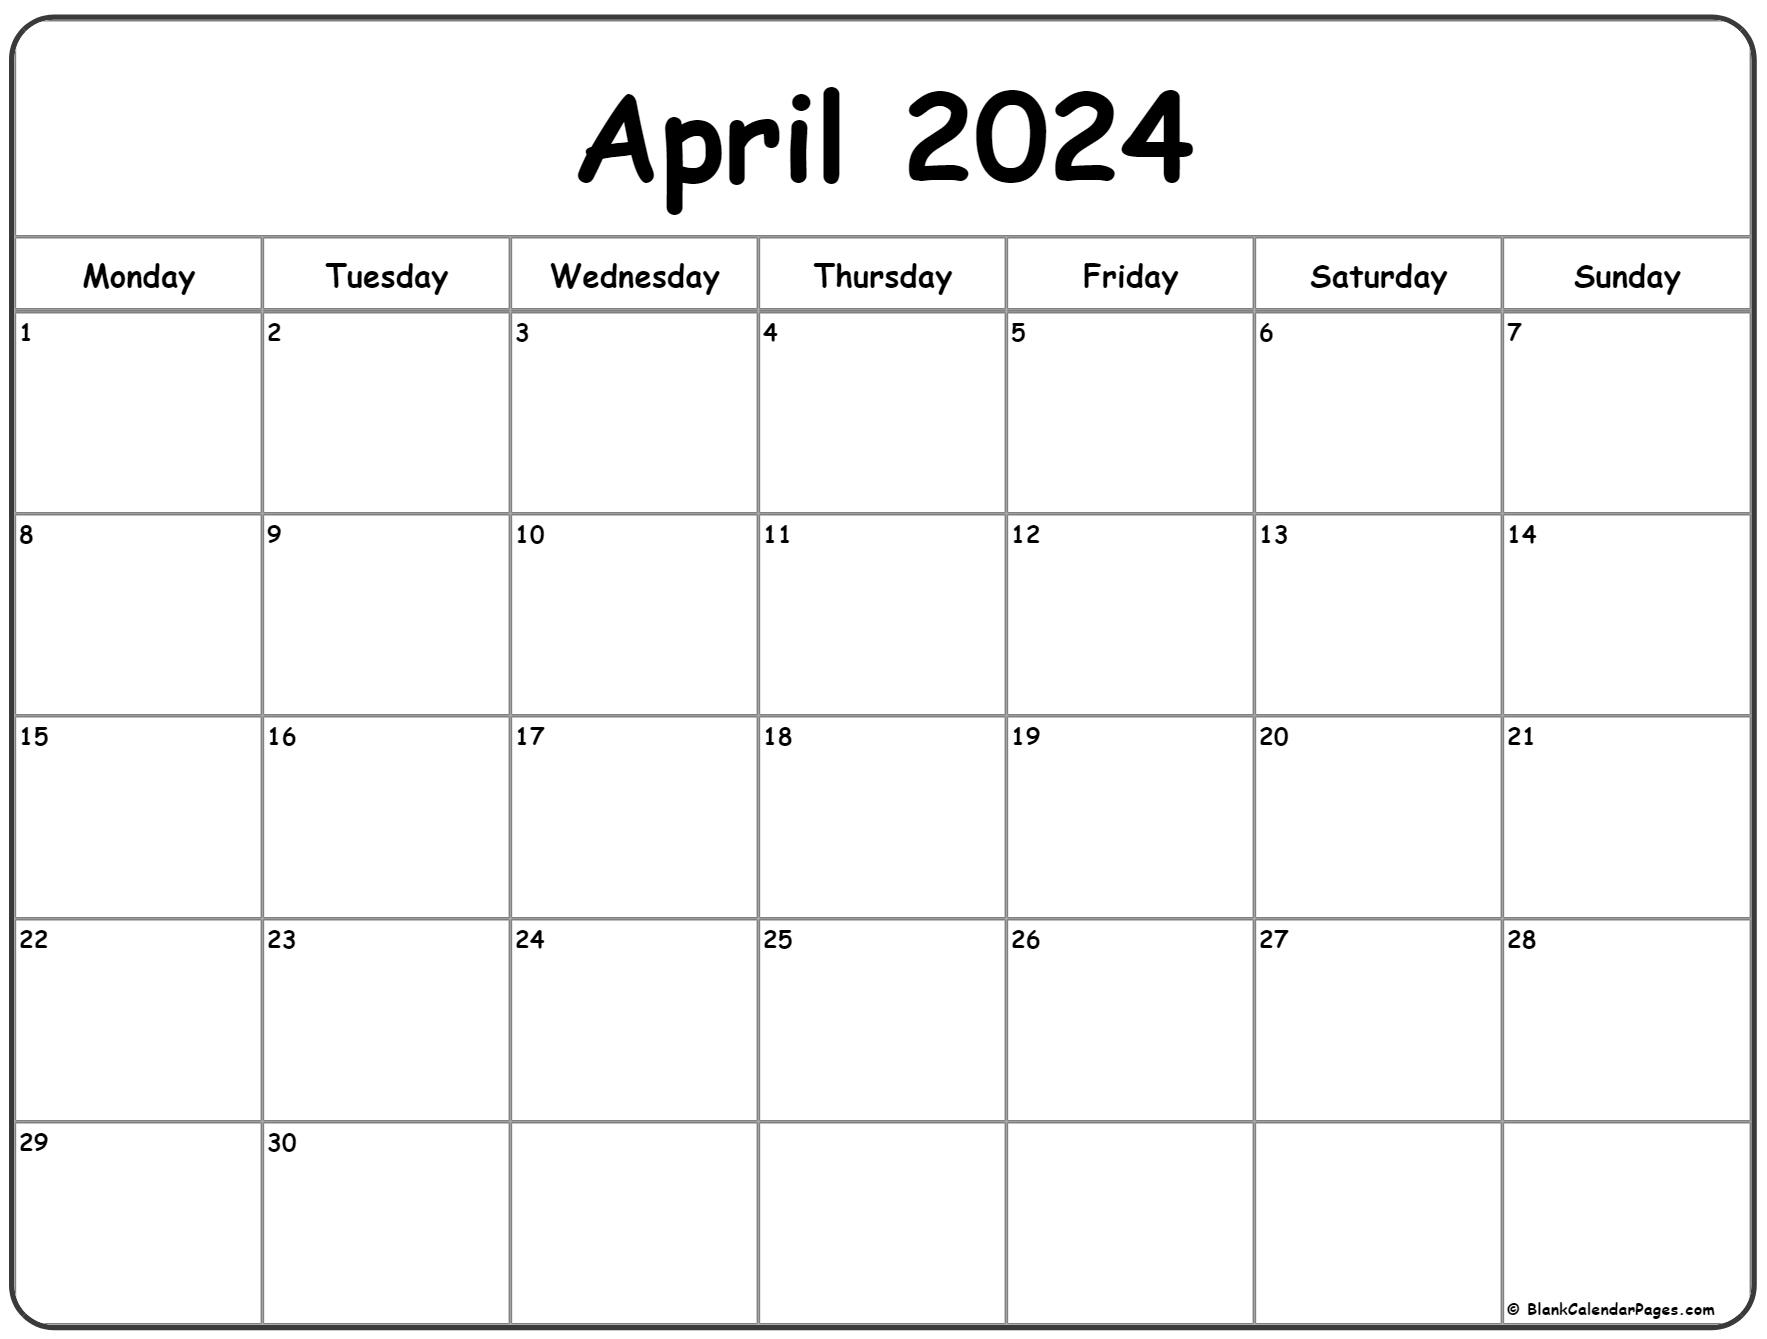 April 2024 Monday Calendar | Monday To Sunday for 2024 Calendar Printable April